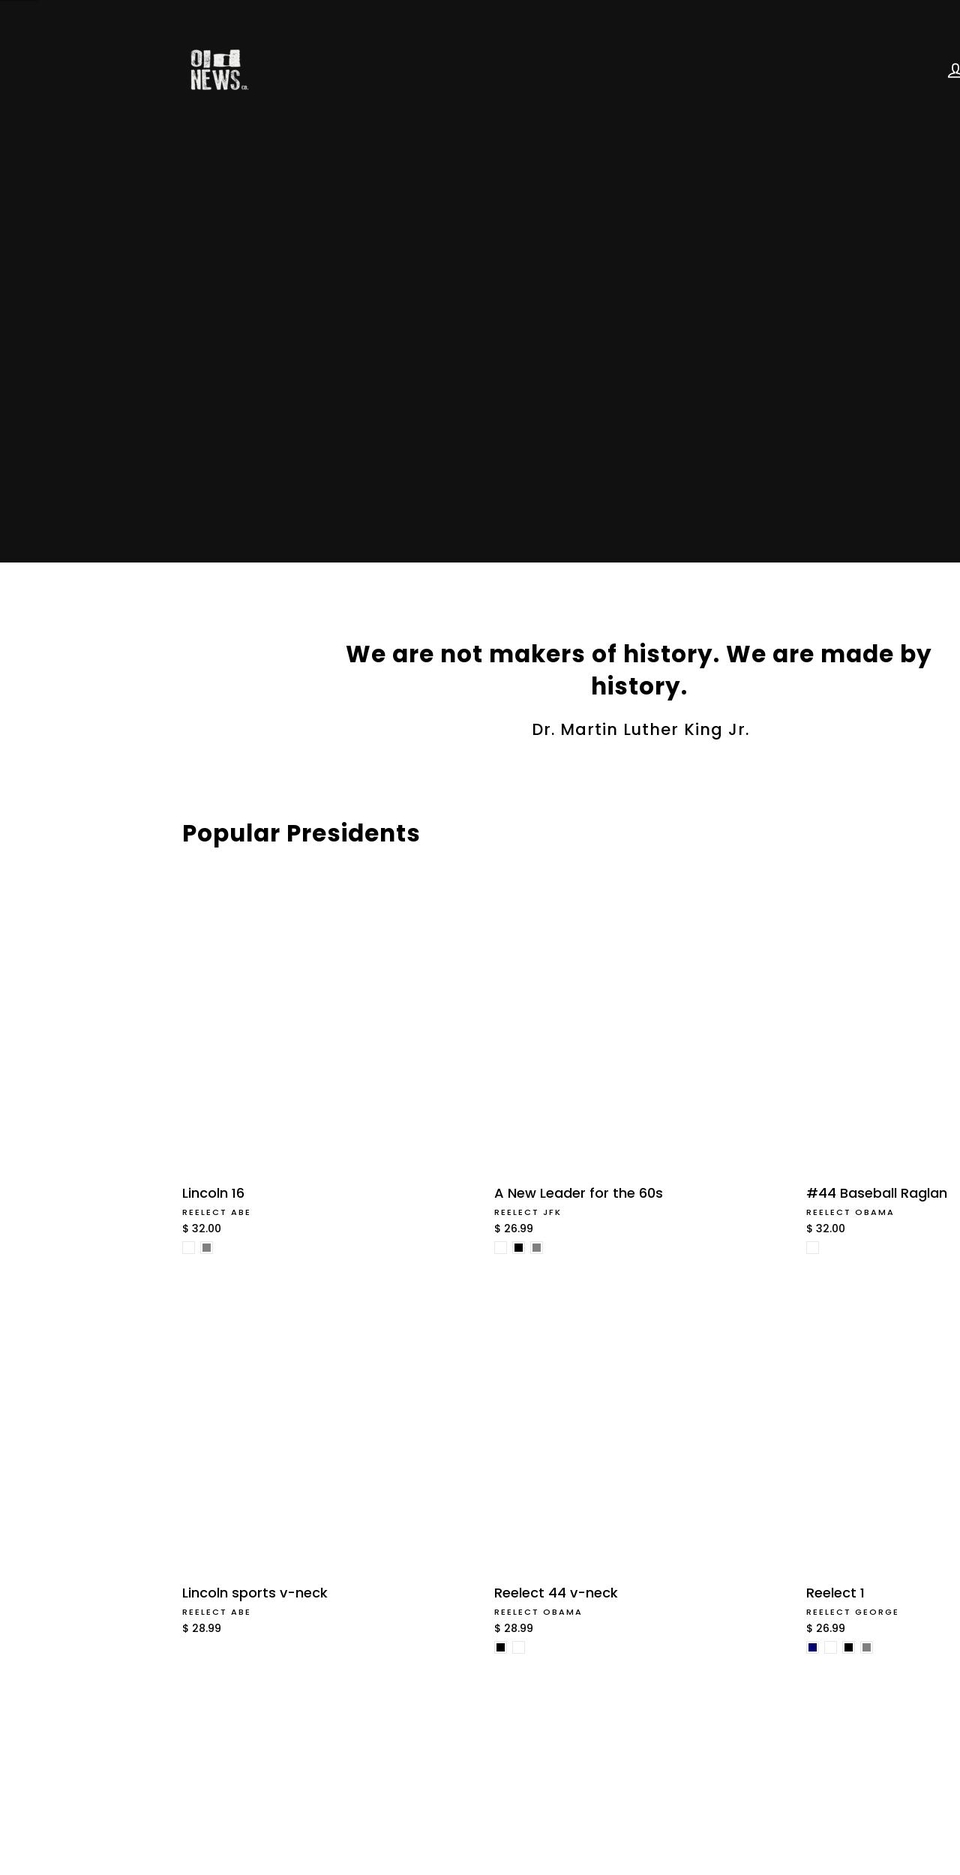 shopthepresidents.com shopify website screenshot